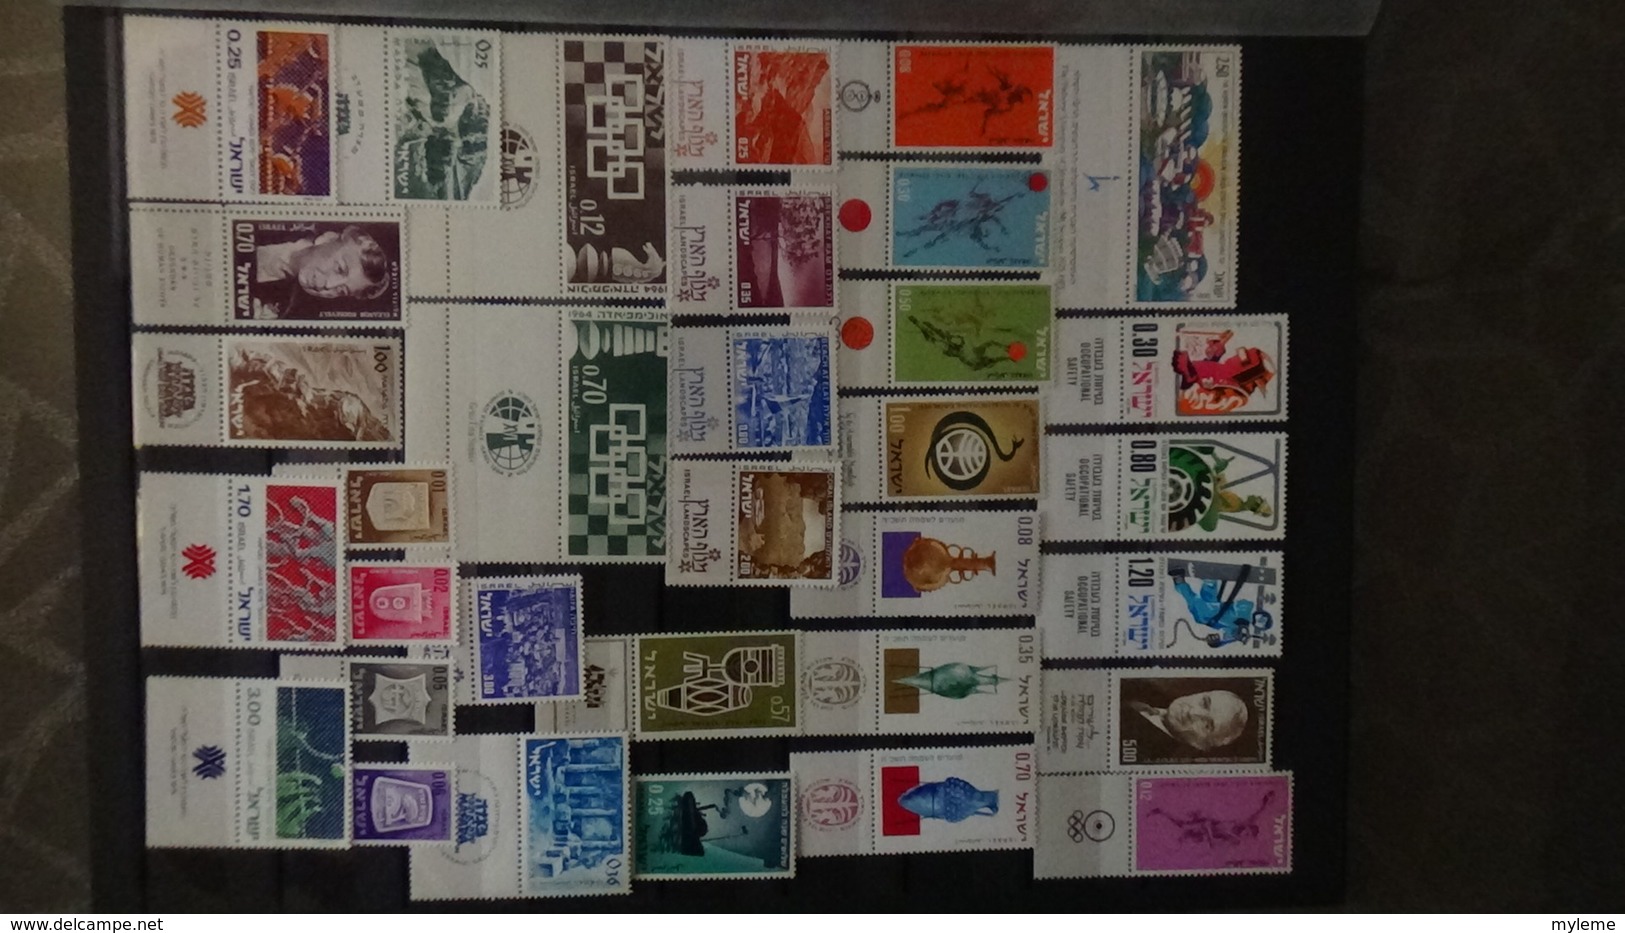 Belle collection d'ISRAËL avec blocs et timbres tous ** avec tabs. A saisir !!!